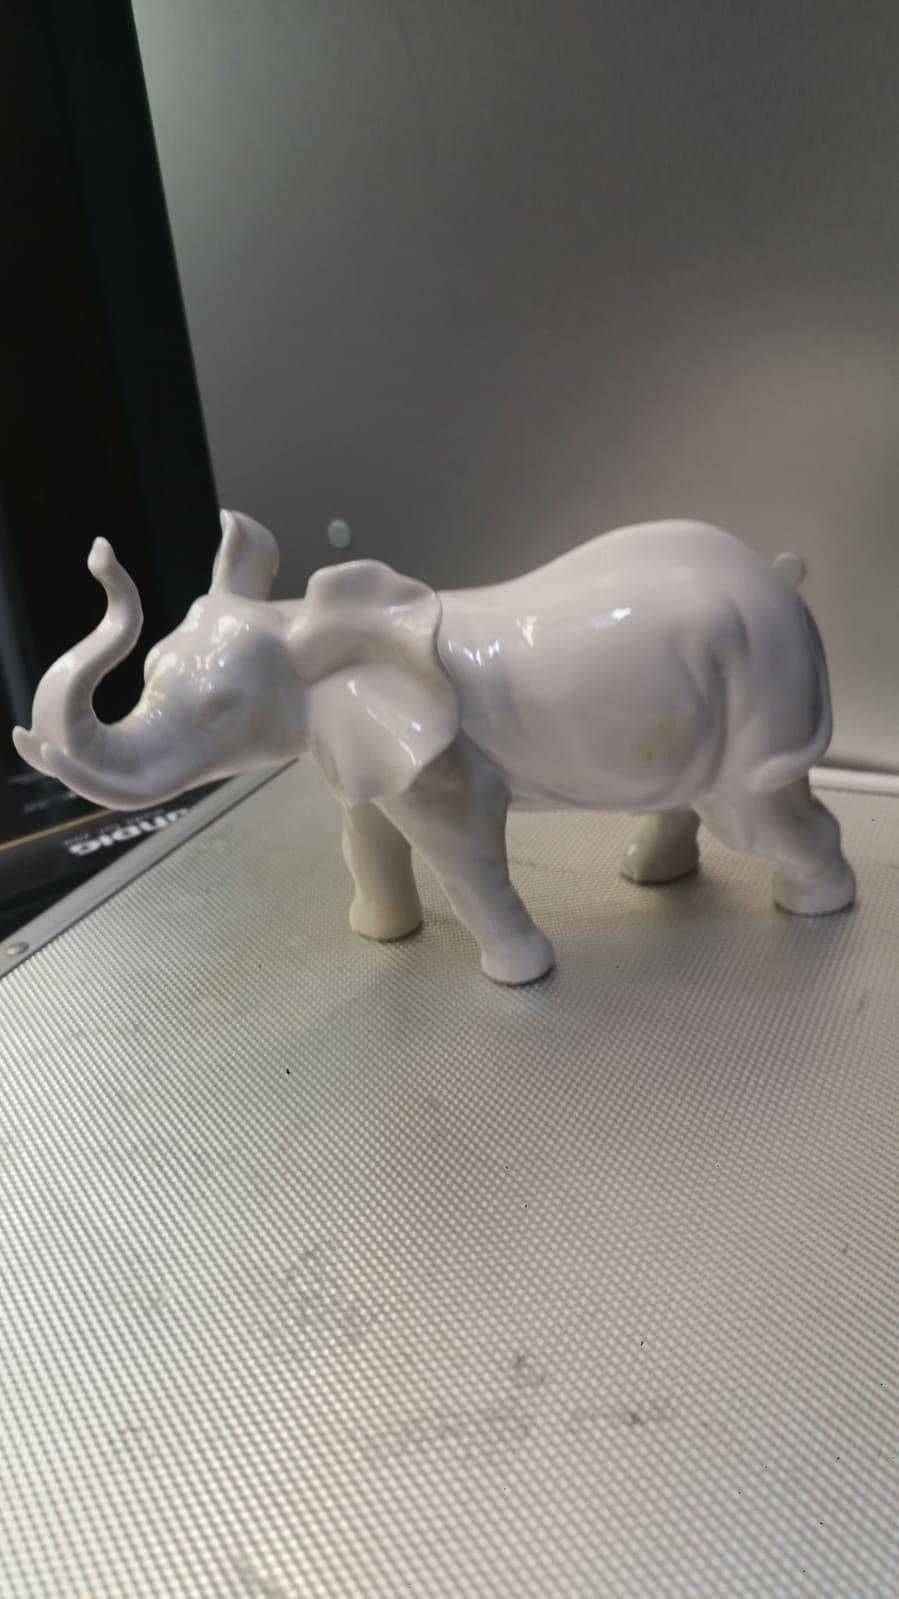 Figurka porcelanowa - słoń / słonik porcelanowy / z porcelany